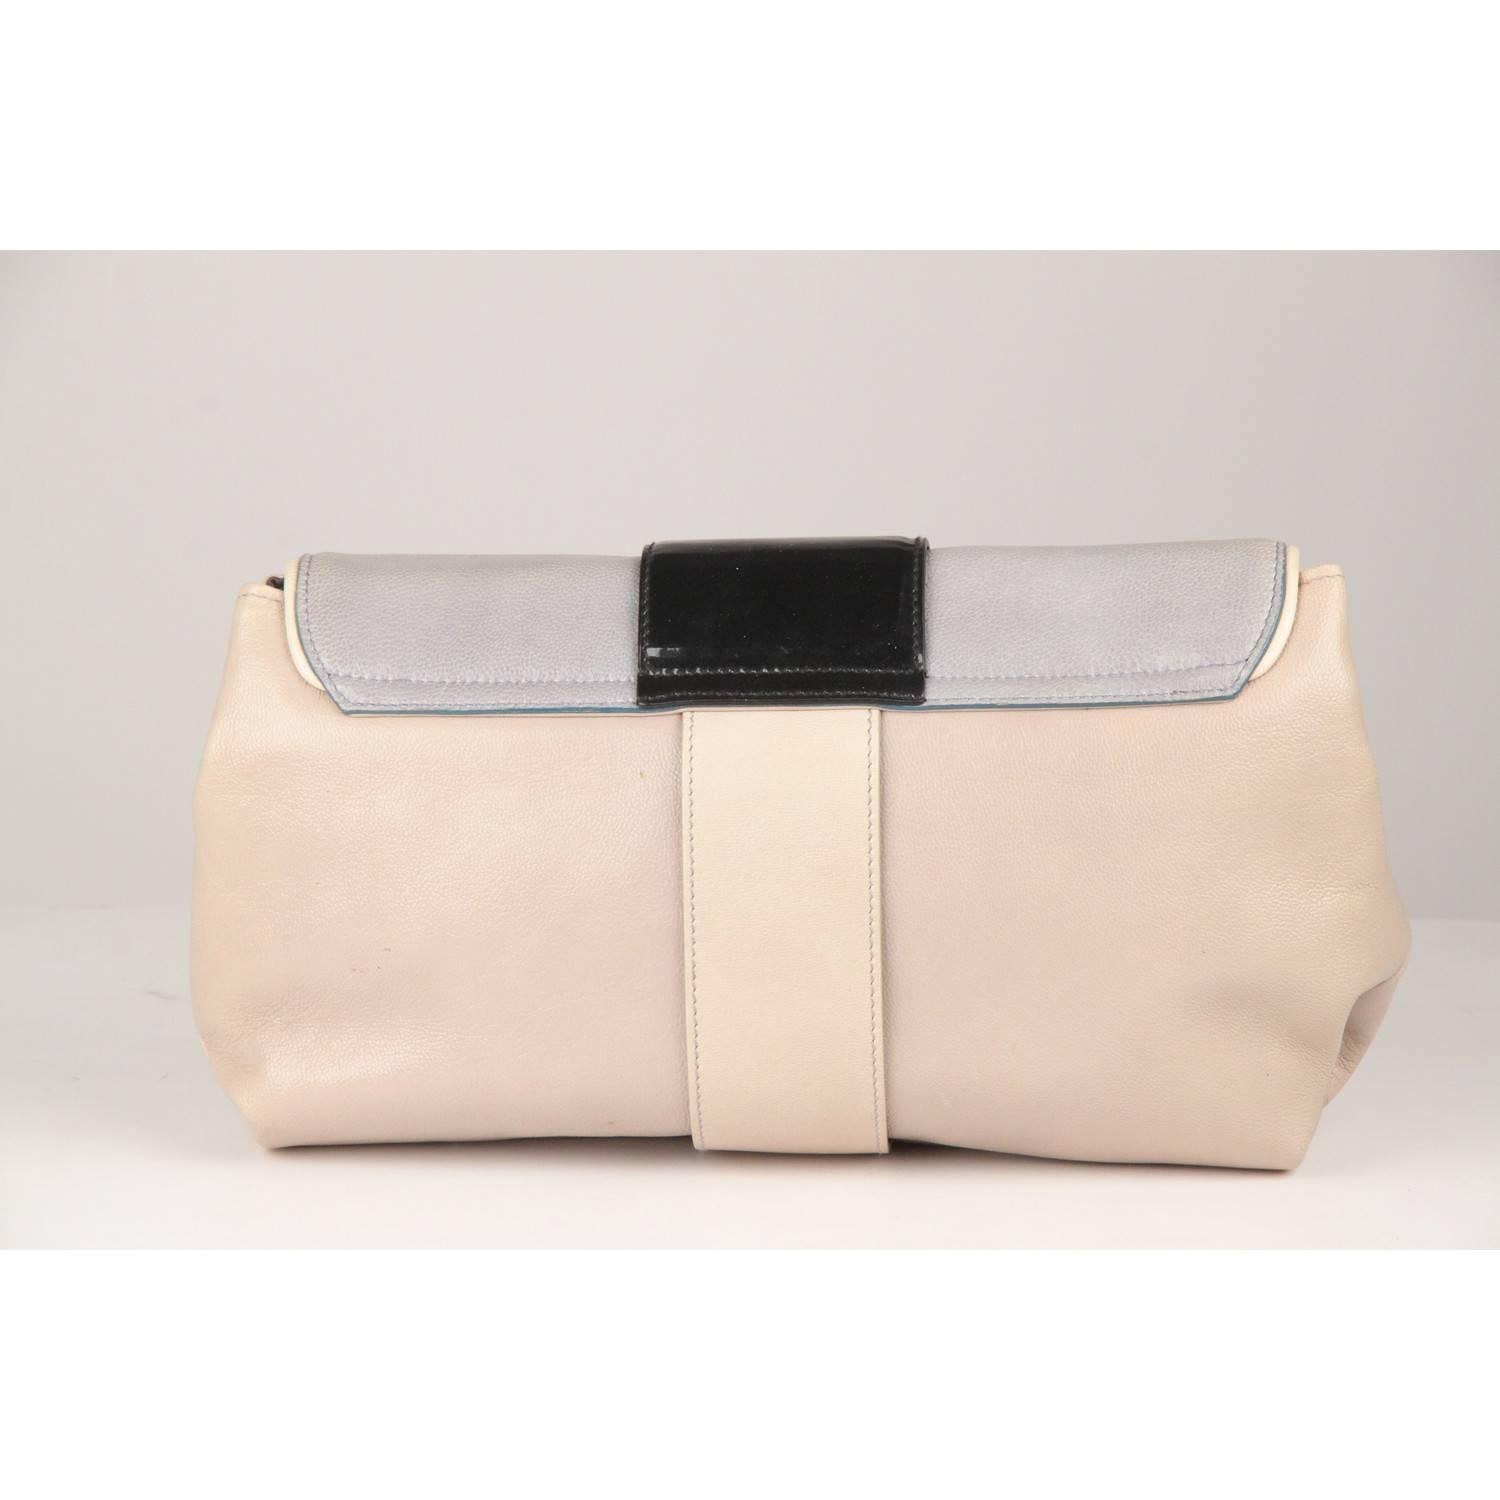 Beige Balenciaga Tricolor Gray Leather Cherche Midi Clutch Bag Handbag